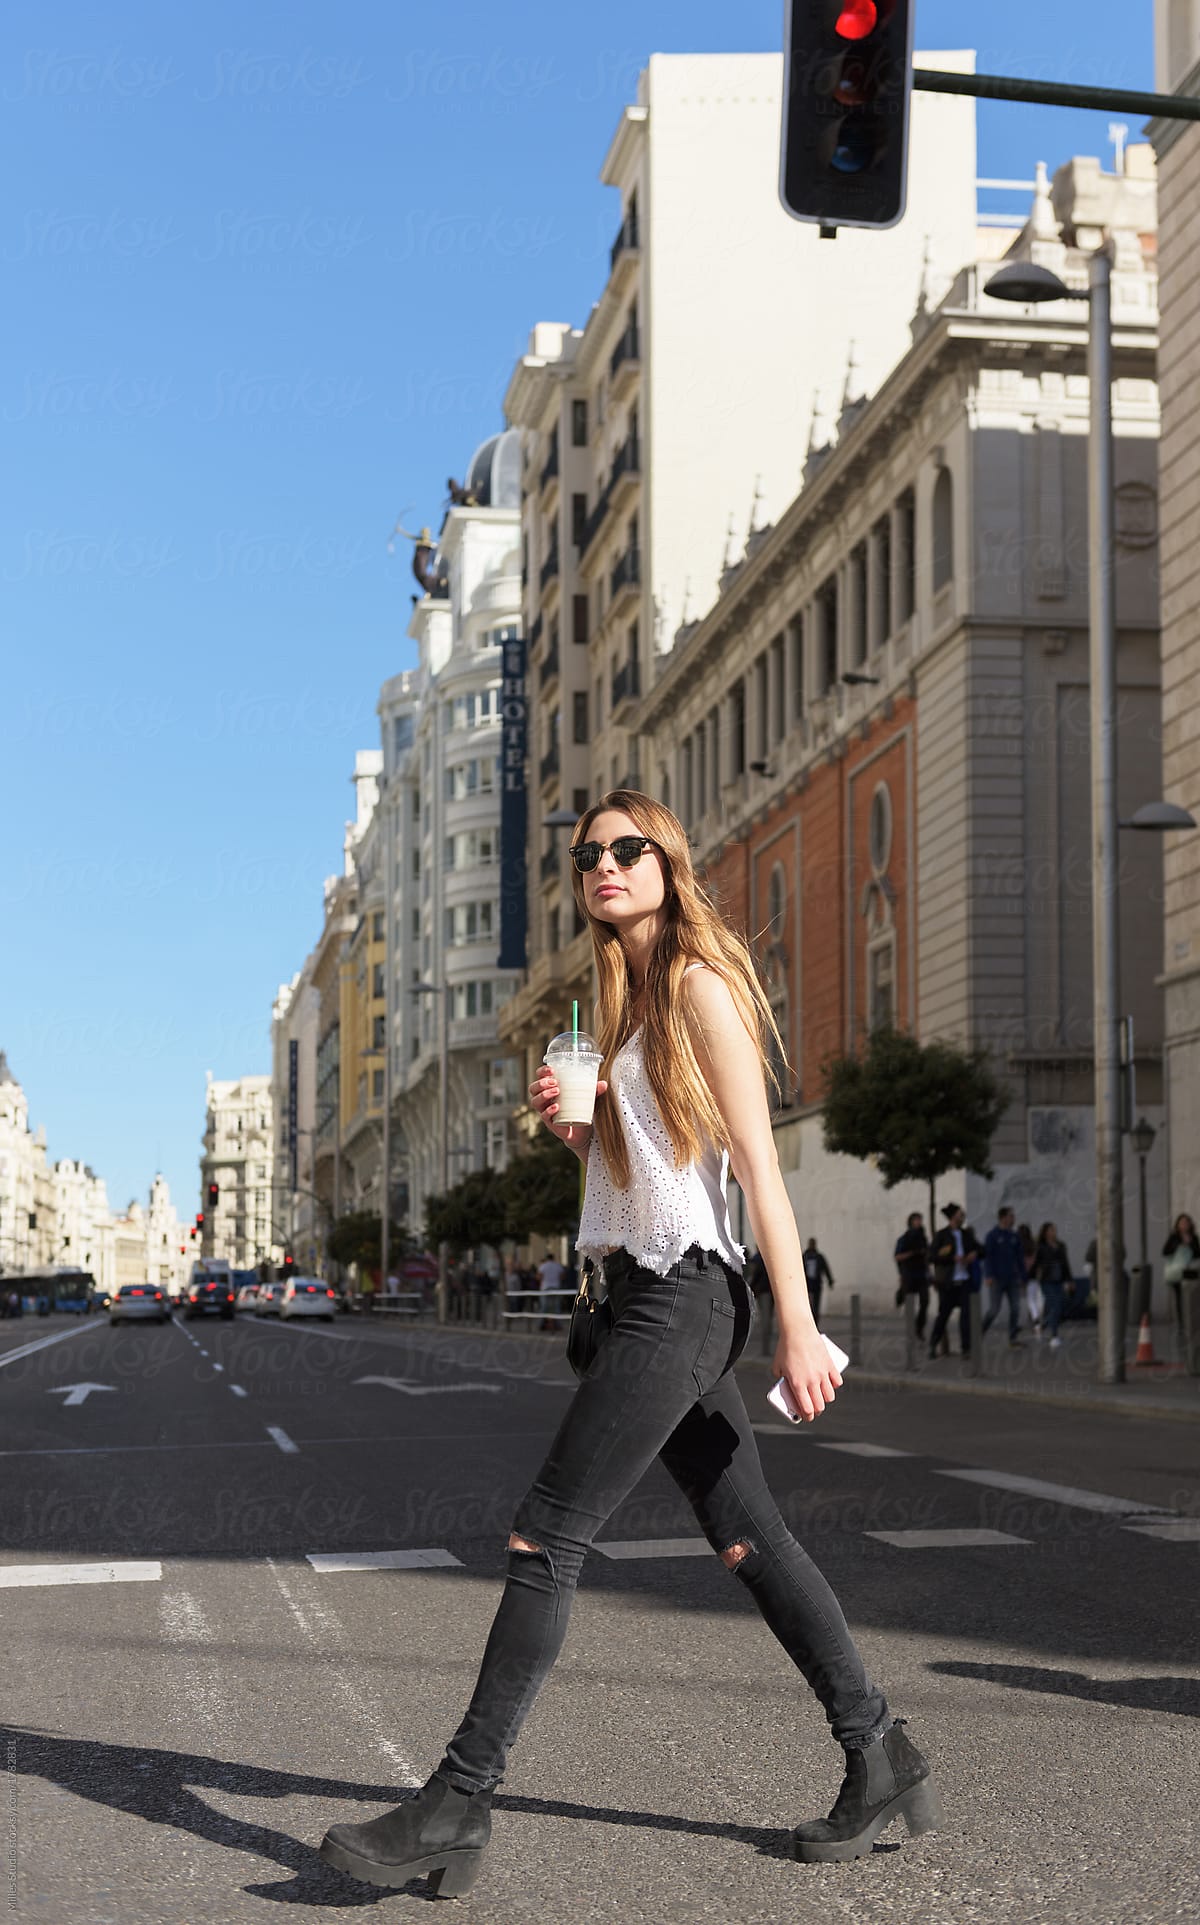 Stylish girl walking on street by Milles Studio - Crossing, Crosswalk